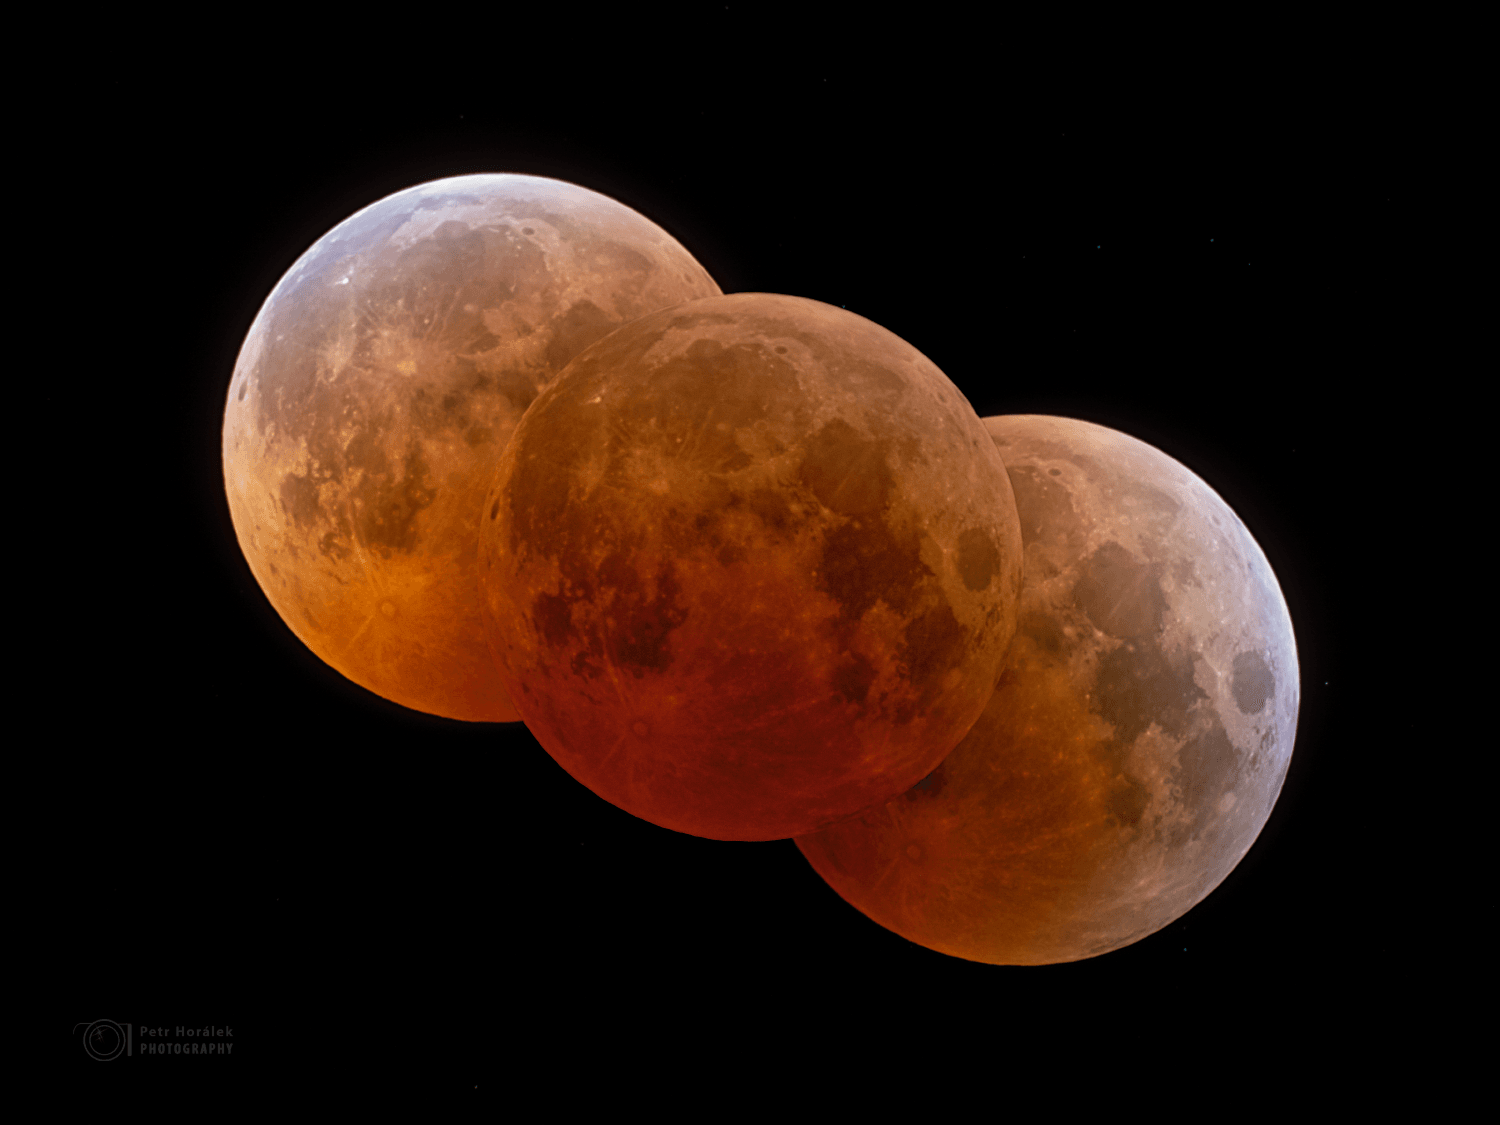 ثلاثة بدور مخسوفة بألوان محمرّة تُظهر تسلسل الخسوف وظلّ الأرض على السطح القمري